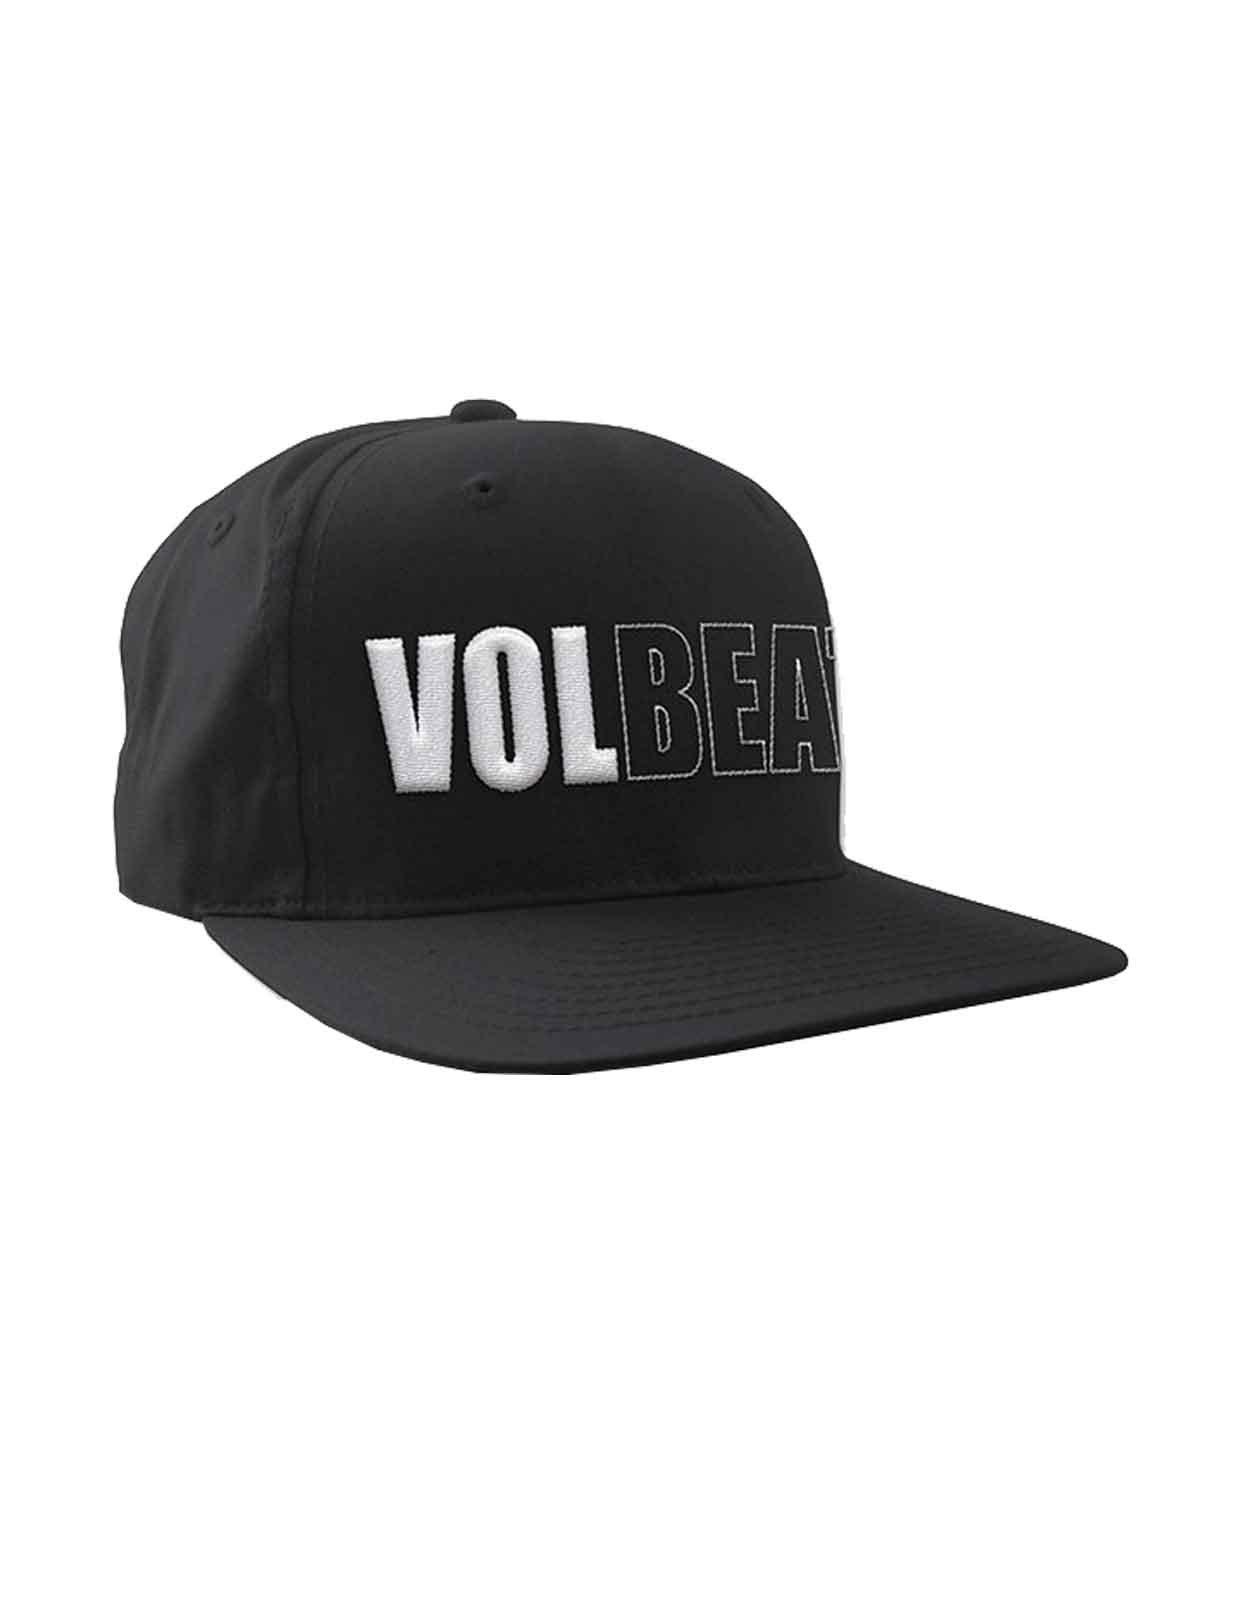 Бейсбольная кепка Snapback с объемным логотипом Band Volbeat, черный фото